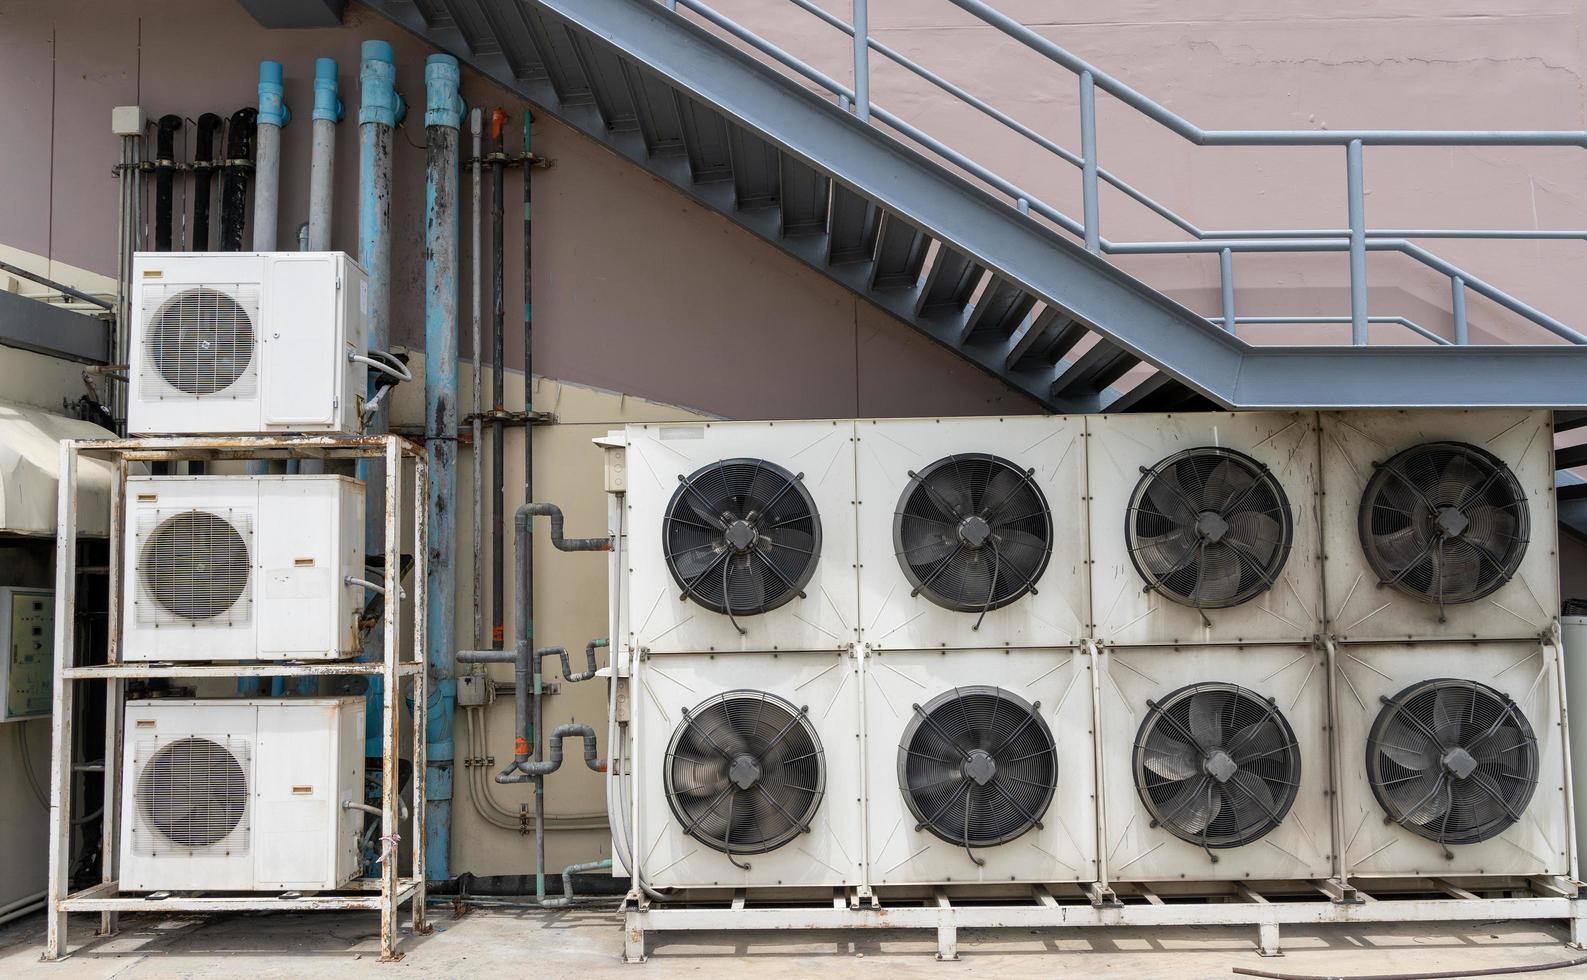 plusieurs grands ventilateurs de climatisation pour faire circuler l'air extérieur pour refroidir l'intérieur sont installés à l'extérieur des grands centres commerciaux. photo